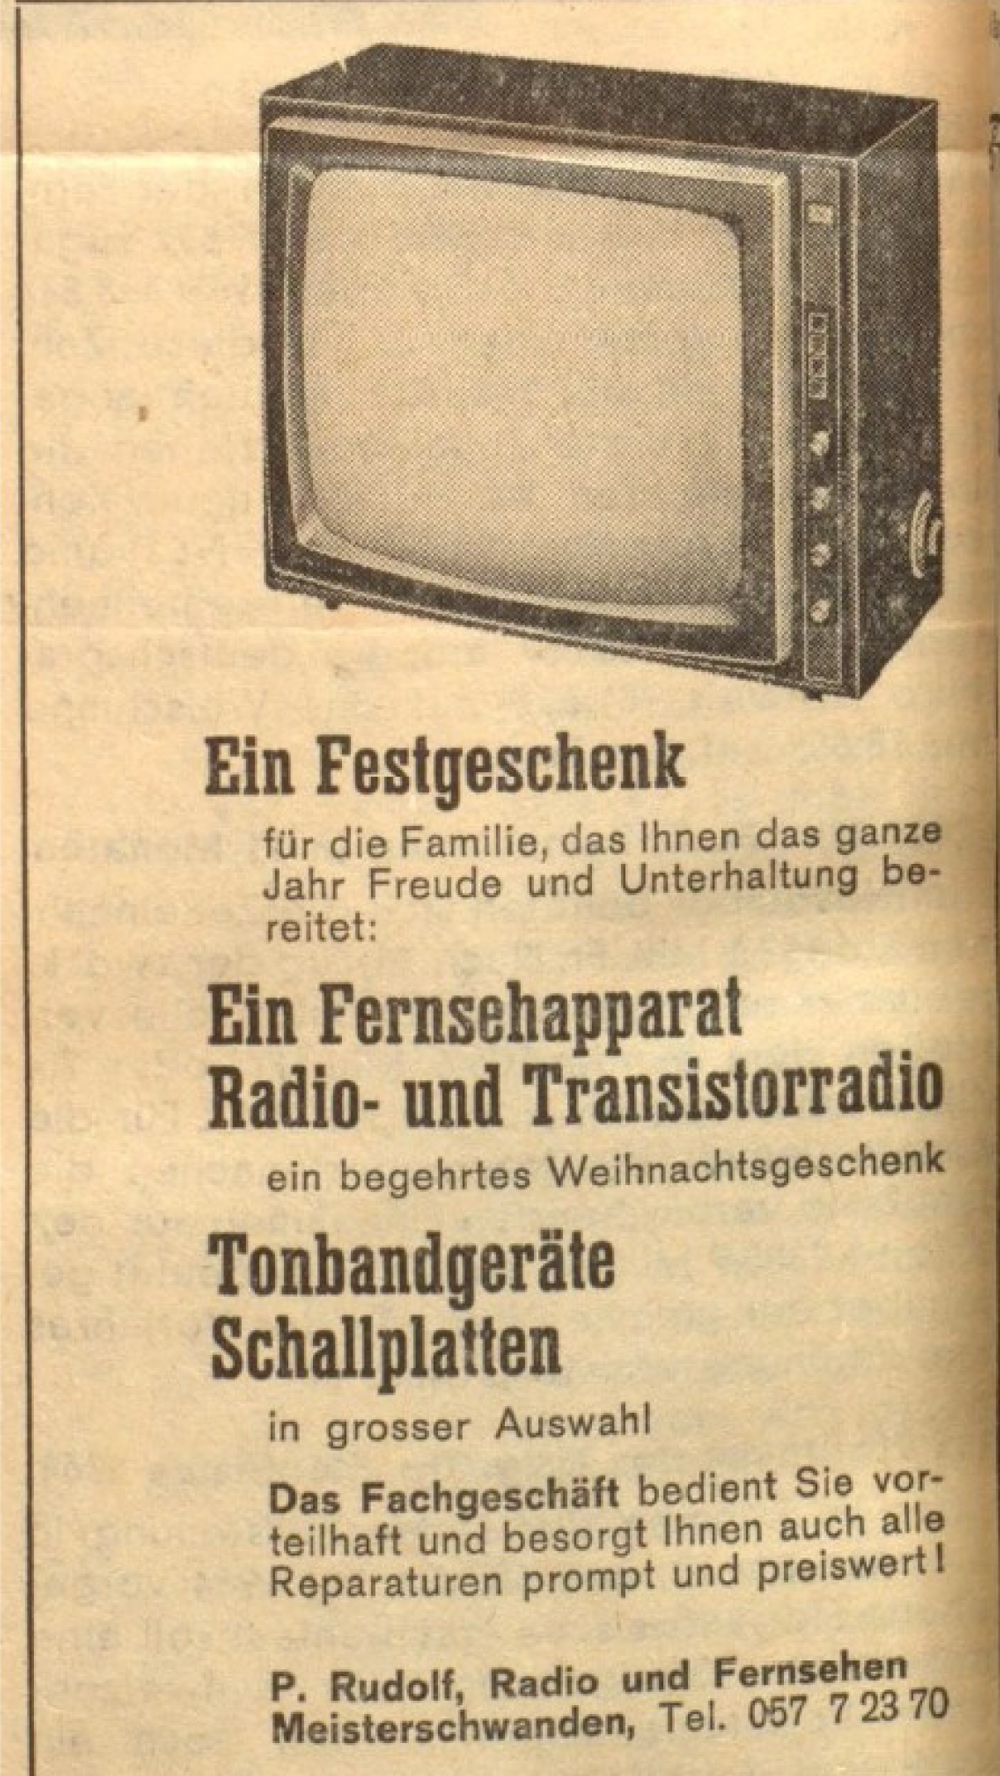 2023 01 tv geraet 1963